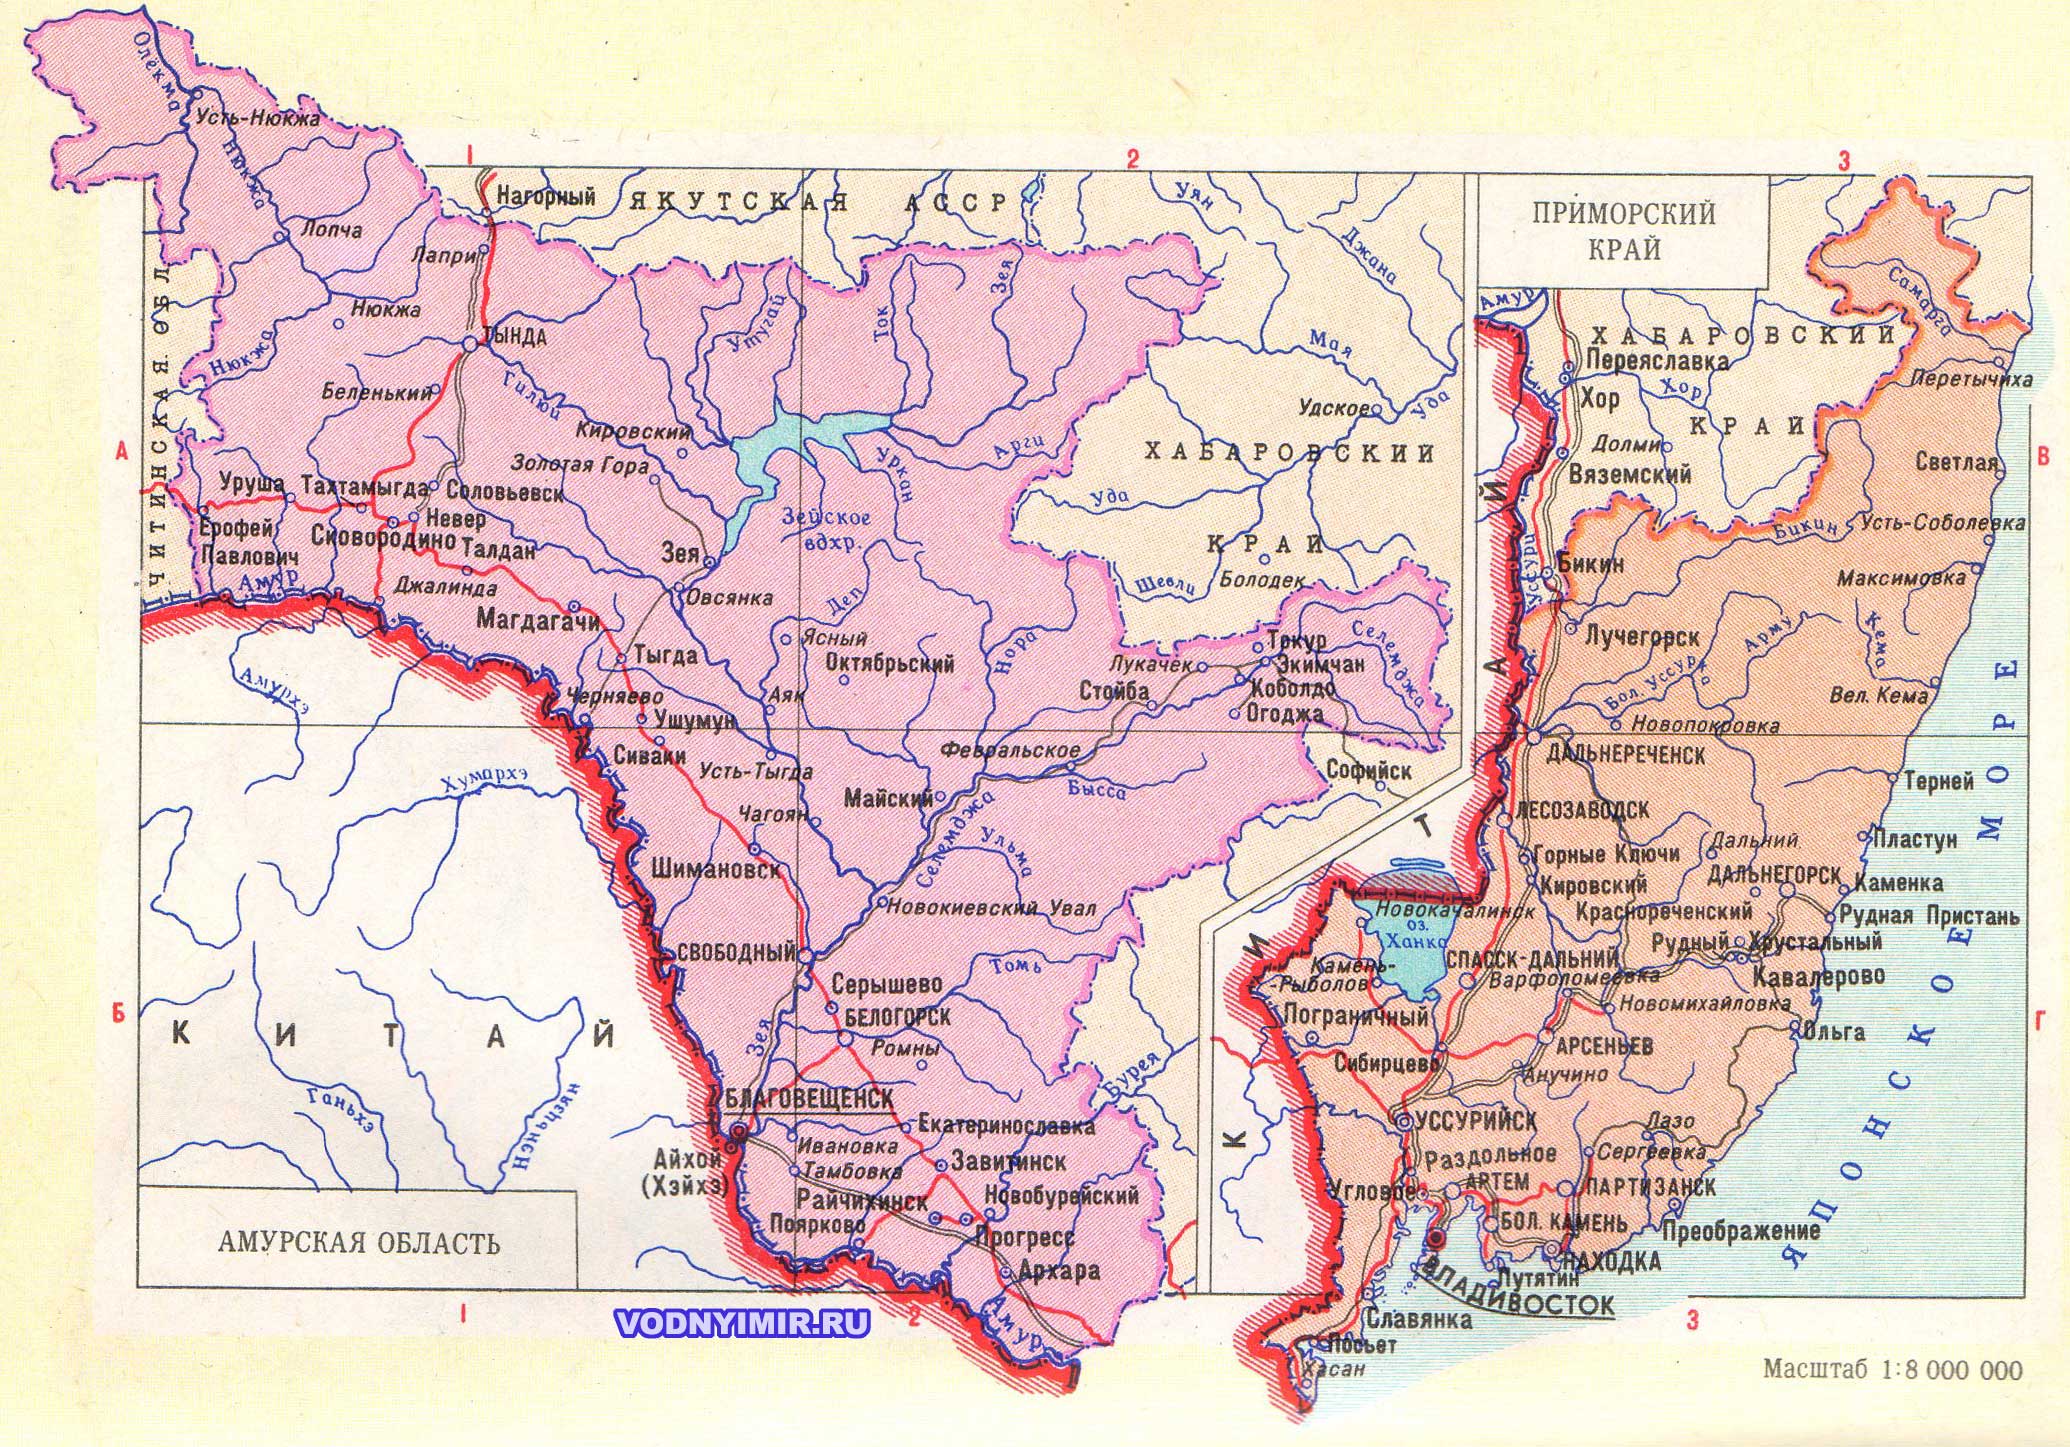 Карта Амурской области, Приморского края — скачать карту